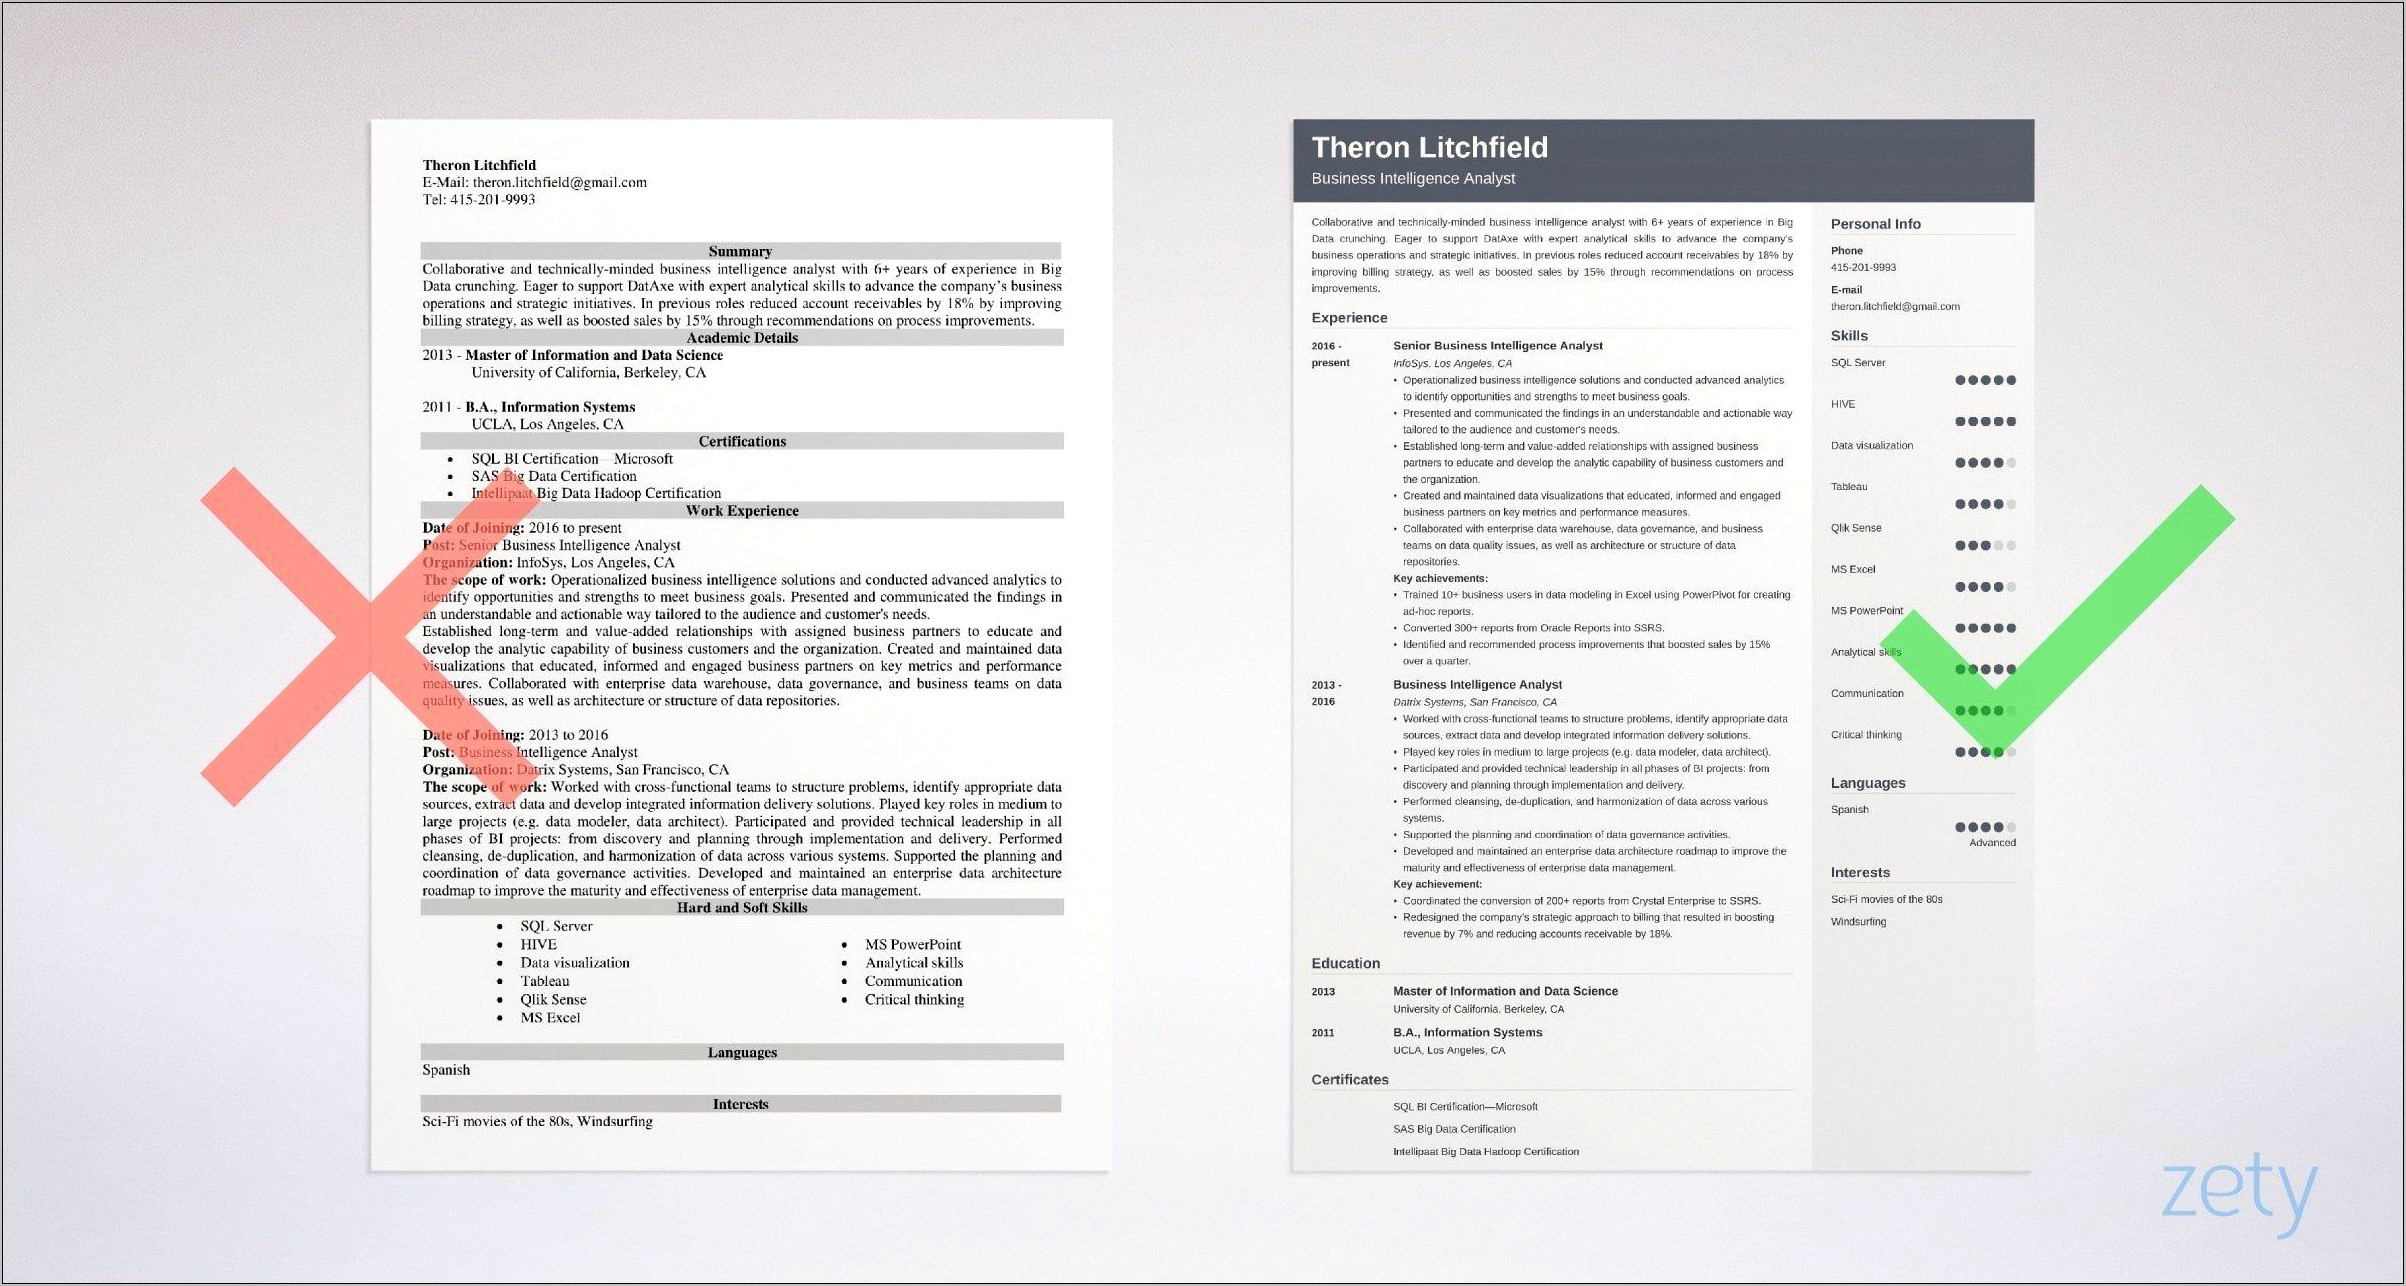 Resume Profile Summary Of Intelligence Analyst